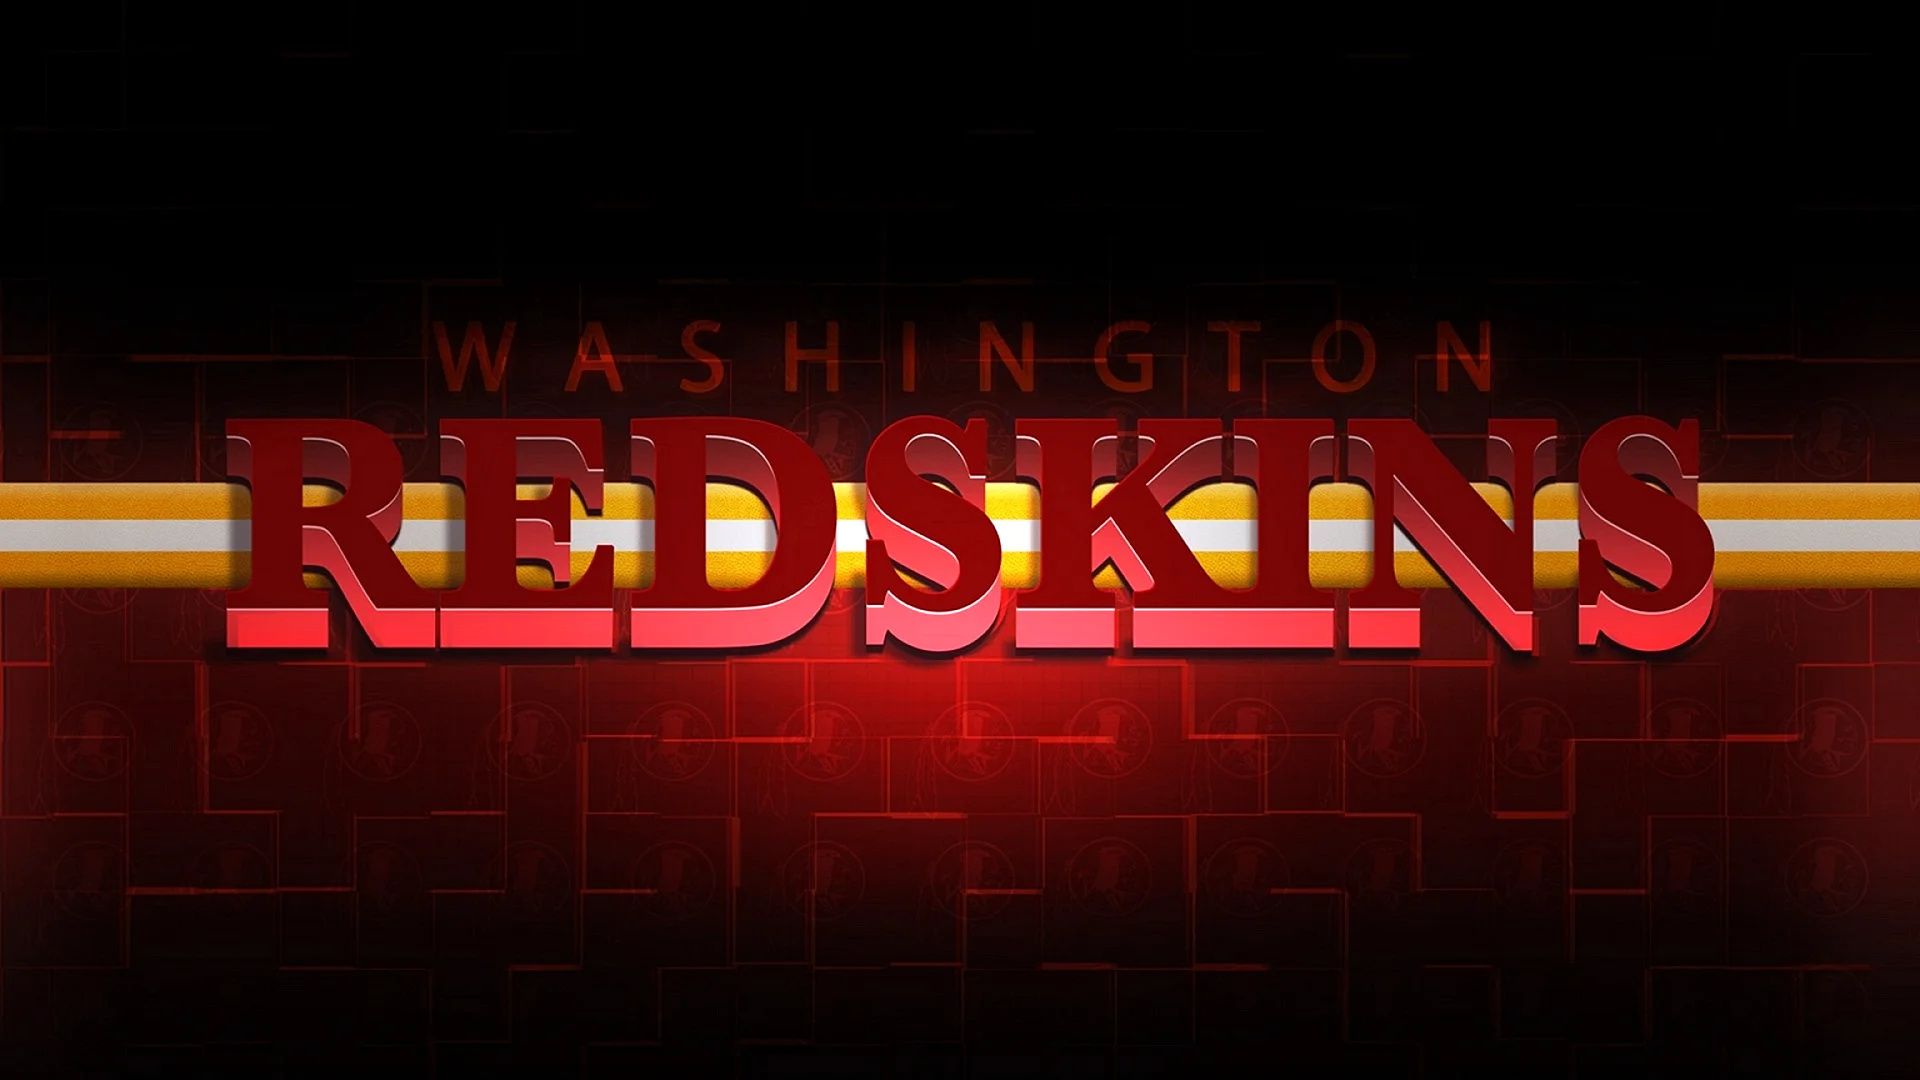 Washington Redskins Logo Wallpaper